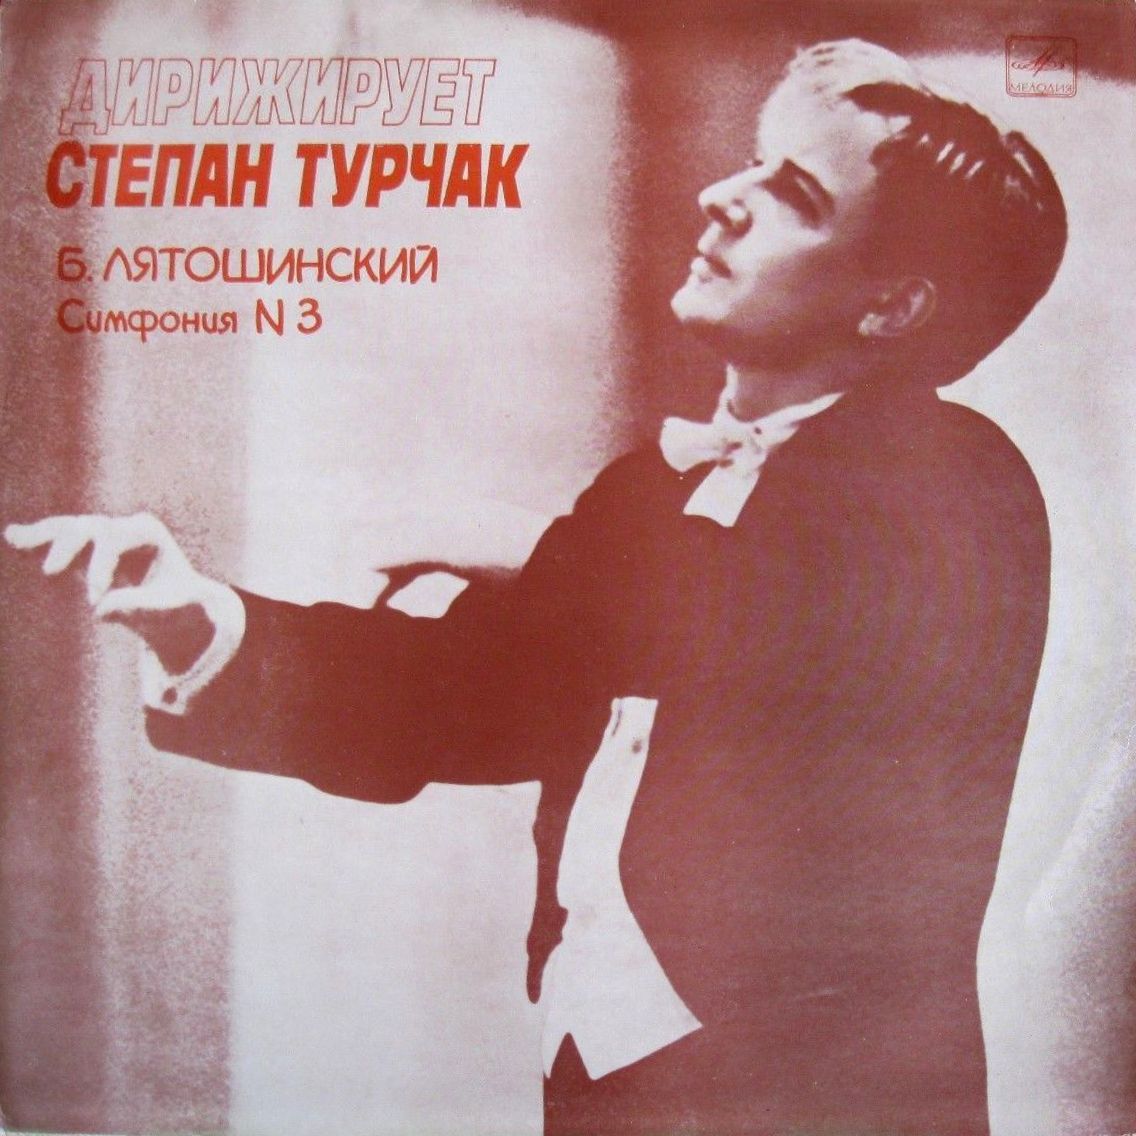 Б. ЛЯТОШИНСКИЙ (1895-1968). Симфония № 3 (С. Турчак)